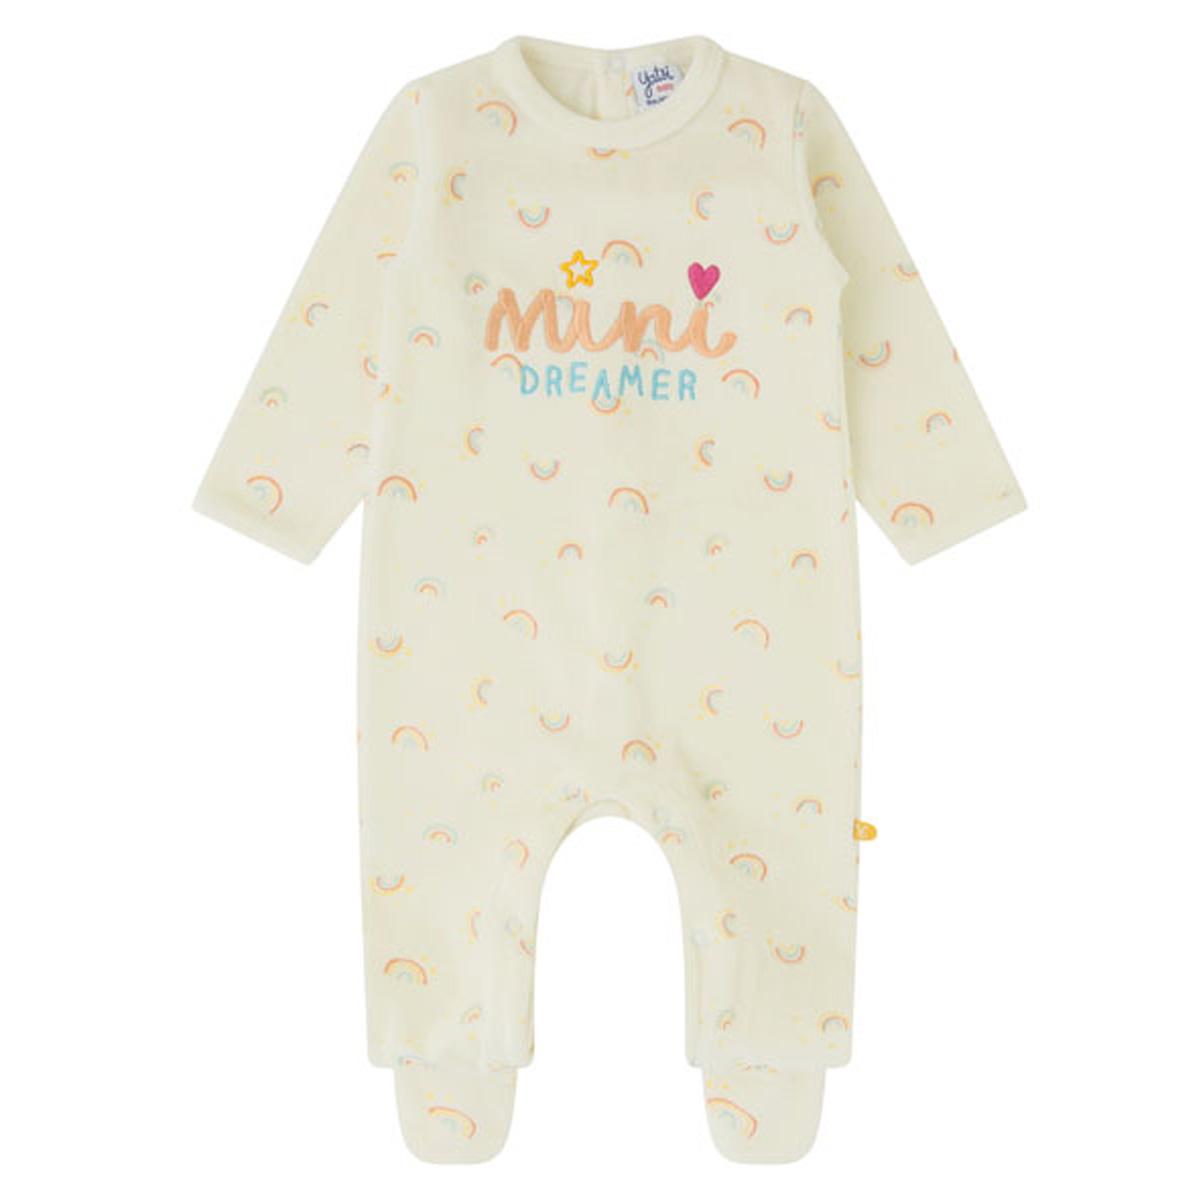 Pijama para bebe niña terciopelo YATSI "mini dreamer"